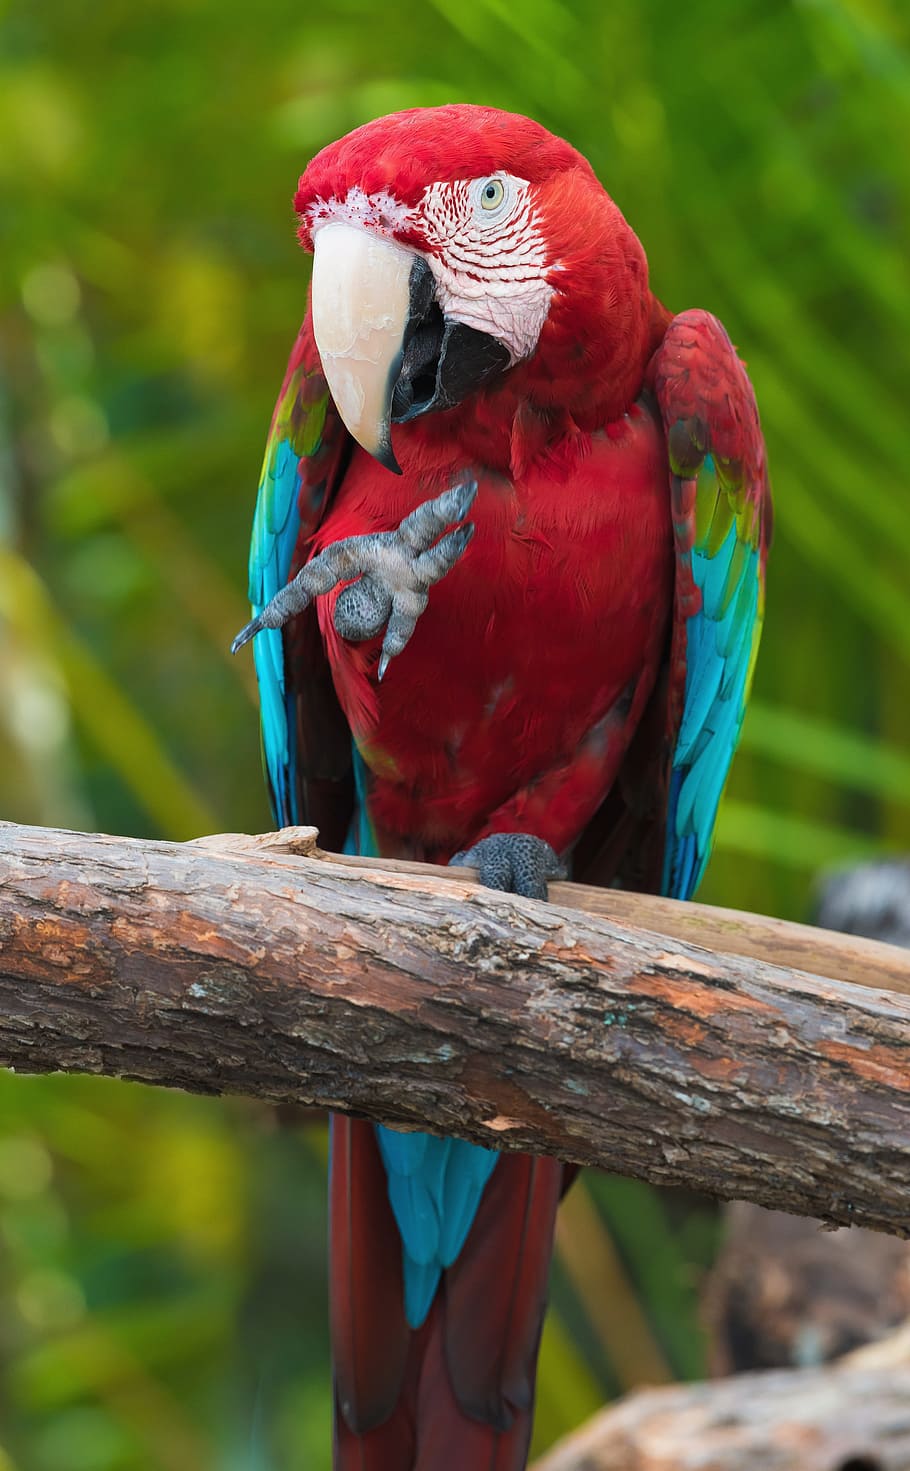 kirmizi, macaw, duduk, coklat, kayu, closeup, foto, Scarlet Macaw, kayu coklat, bayan